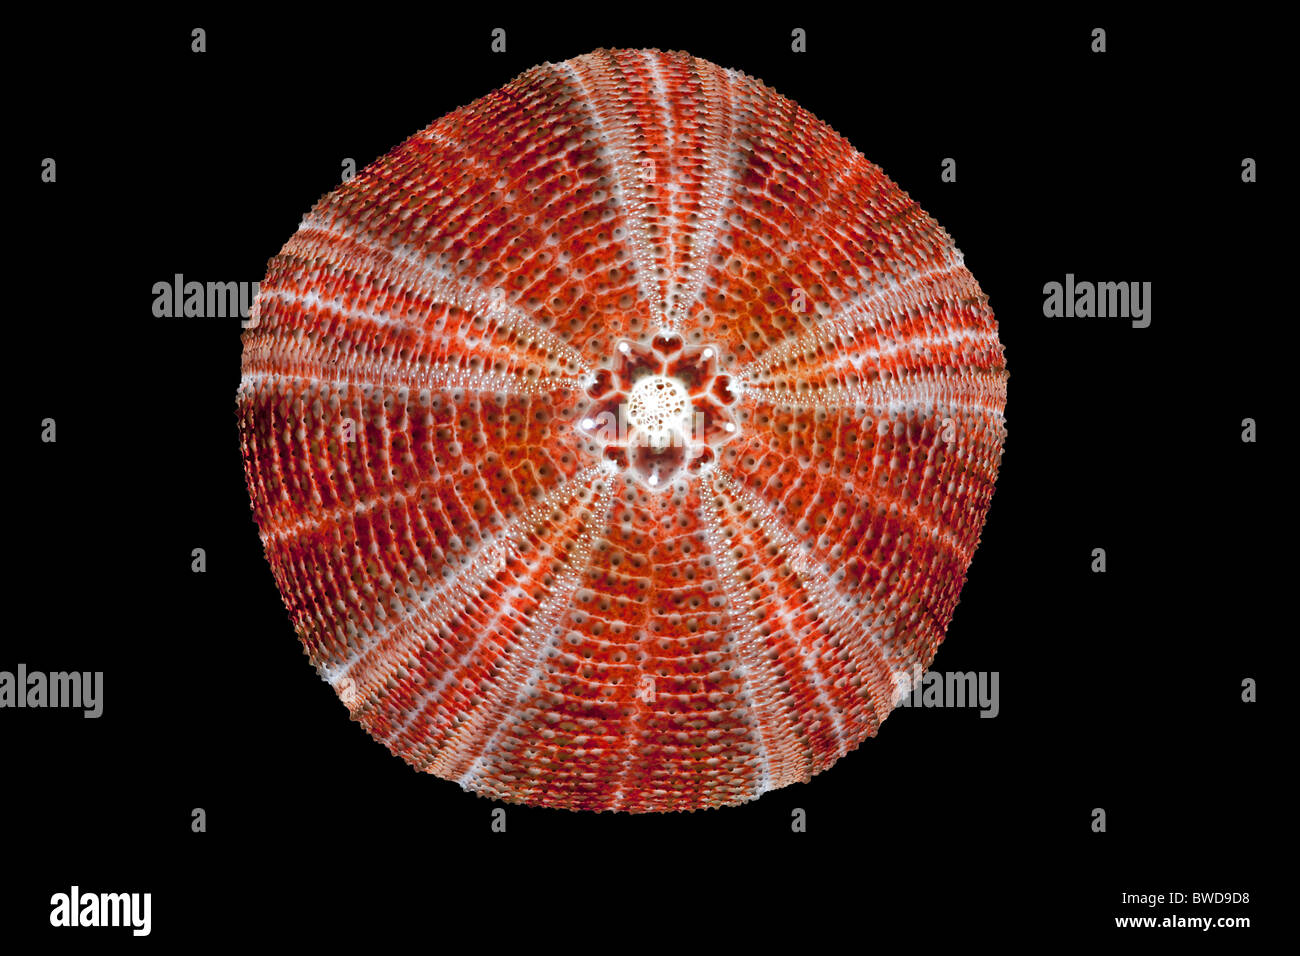 Un comune dei ricci di mare shell (Echinus esculentus) fotografato in studio. Coquille d'oursin photographiée en studio. Foto Stock